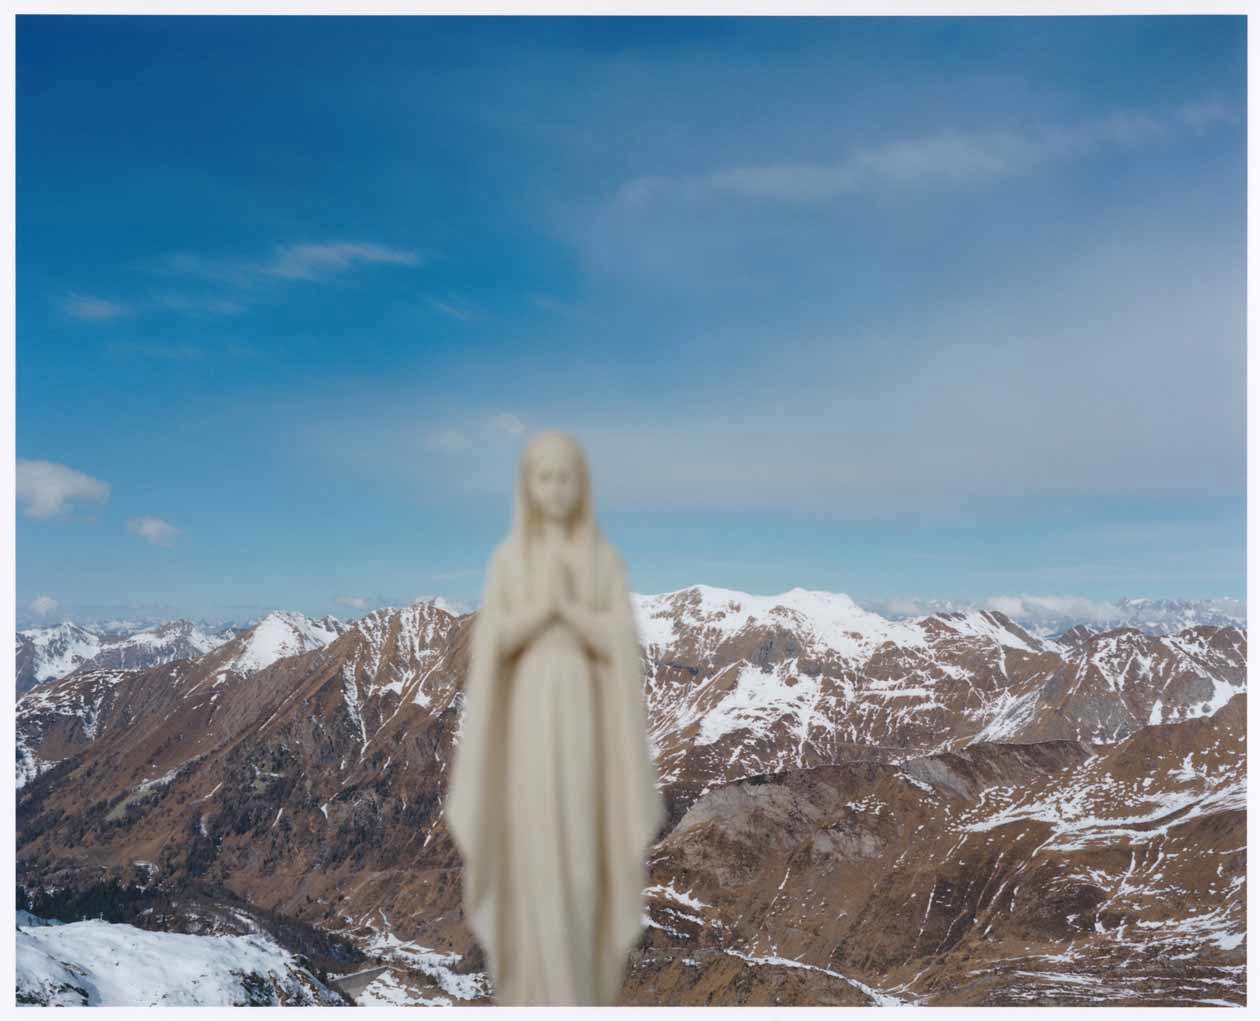 Naoki Ishikawa, Alpi Orobie, 2022, Campagna fotografica realizzata in occasione della mostra Vette di Luce, Accademia Carrara, 2023. Copyright © Accademia Carrara.